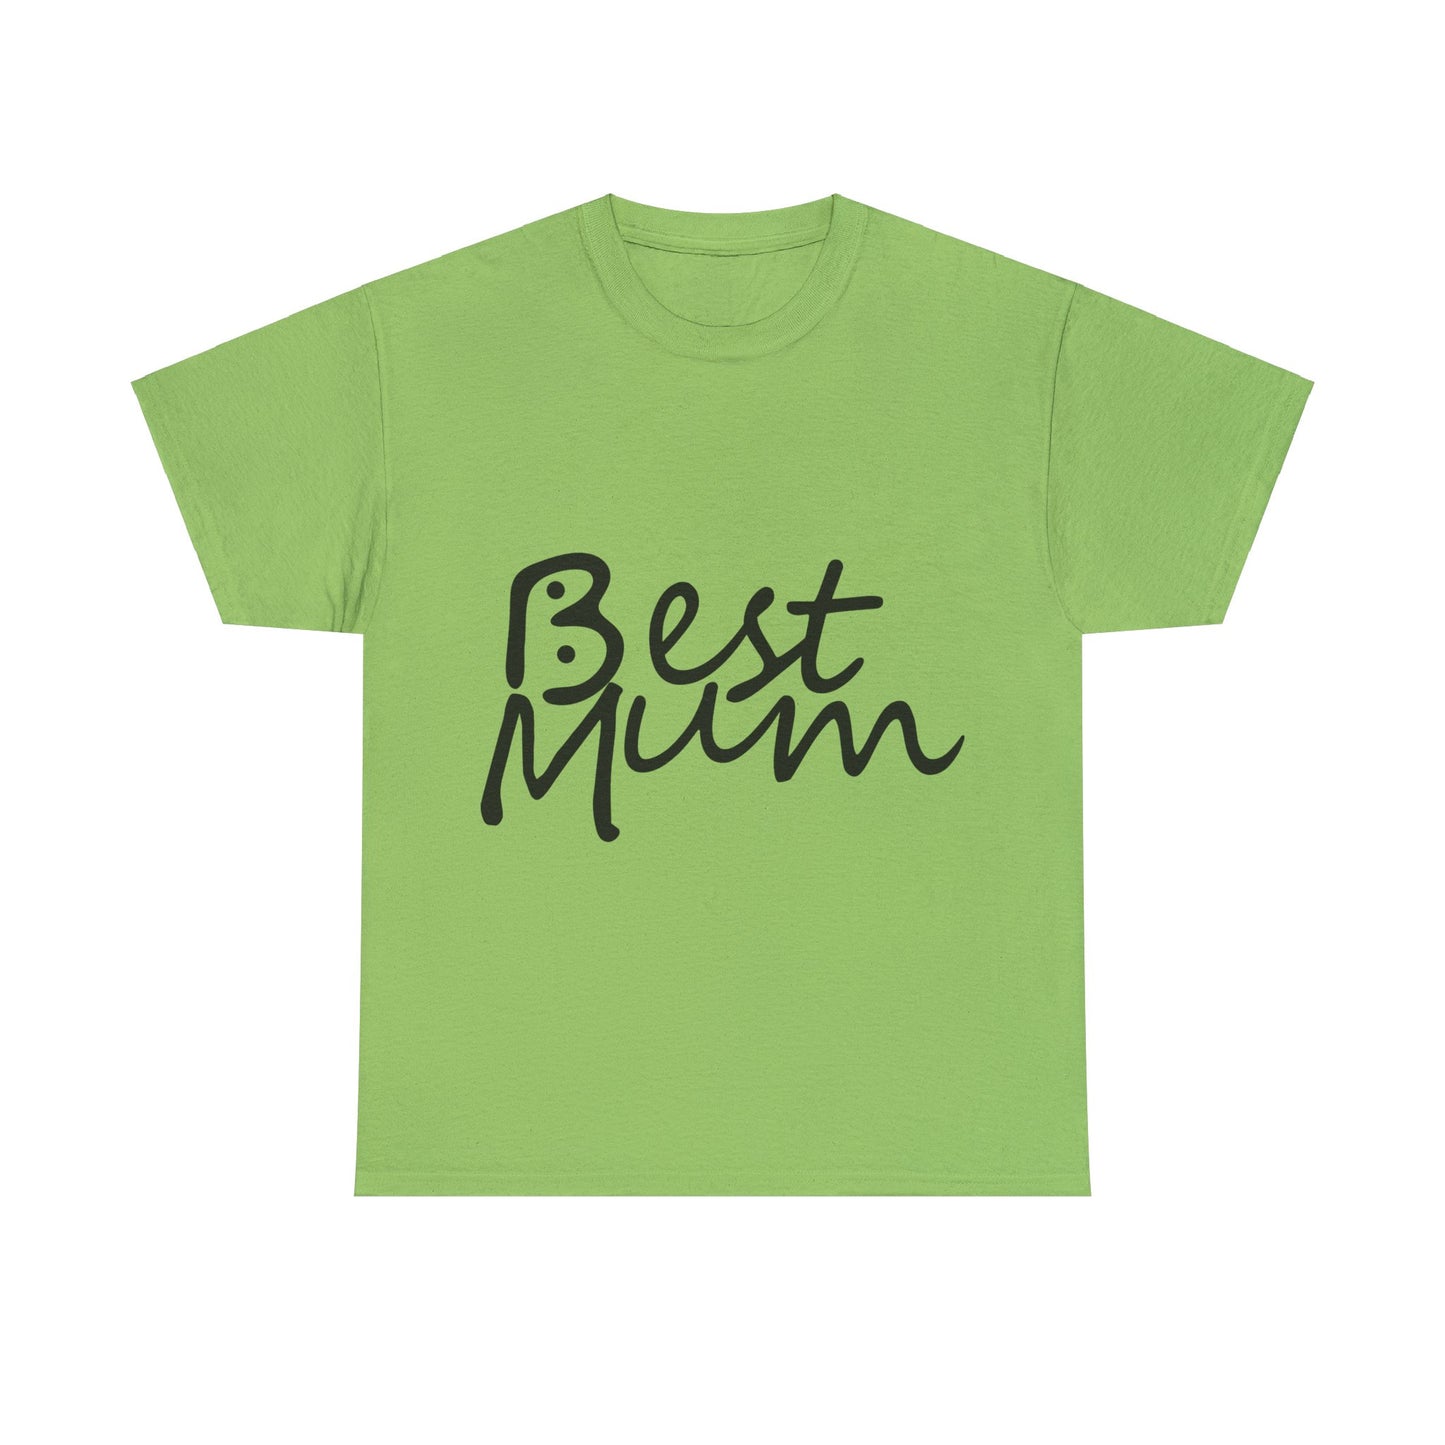 Best Mum, Bogan's Design